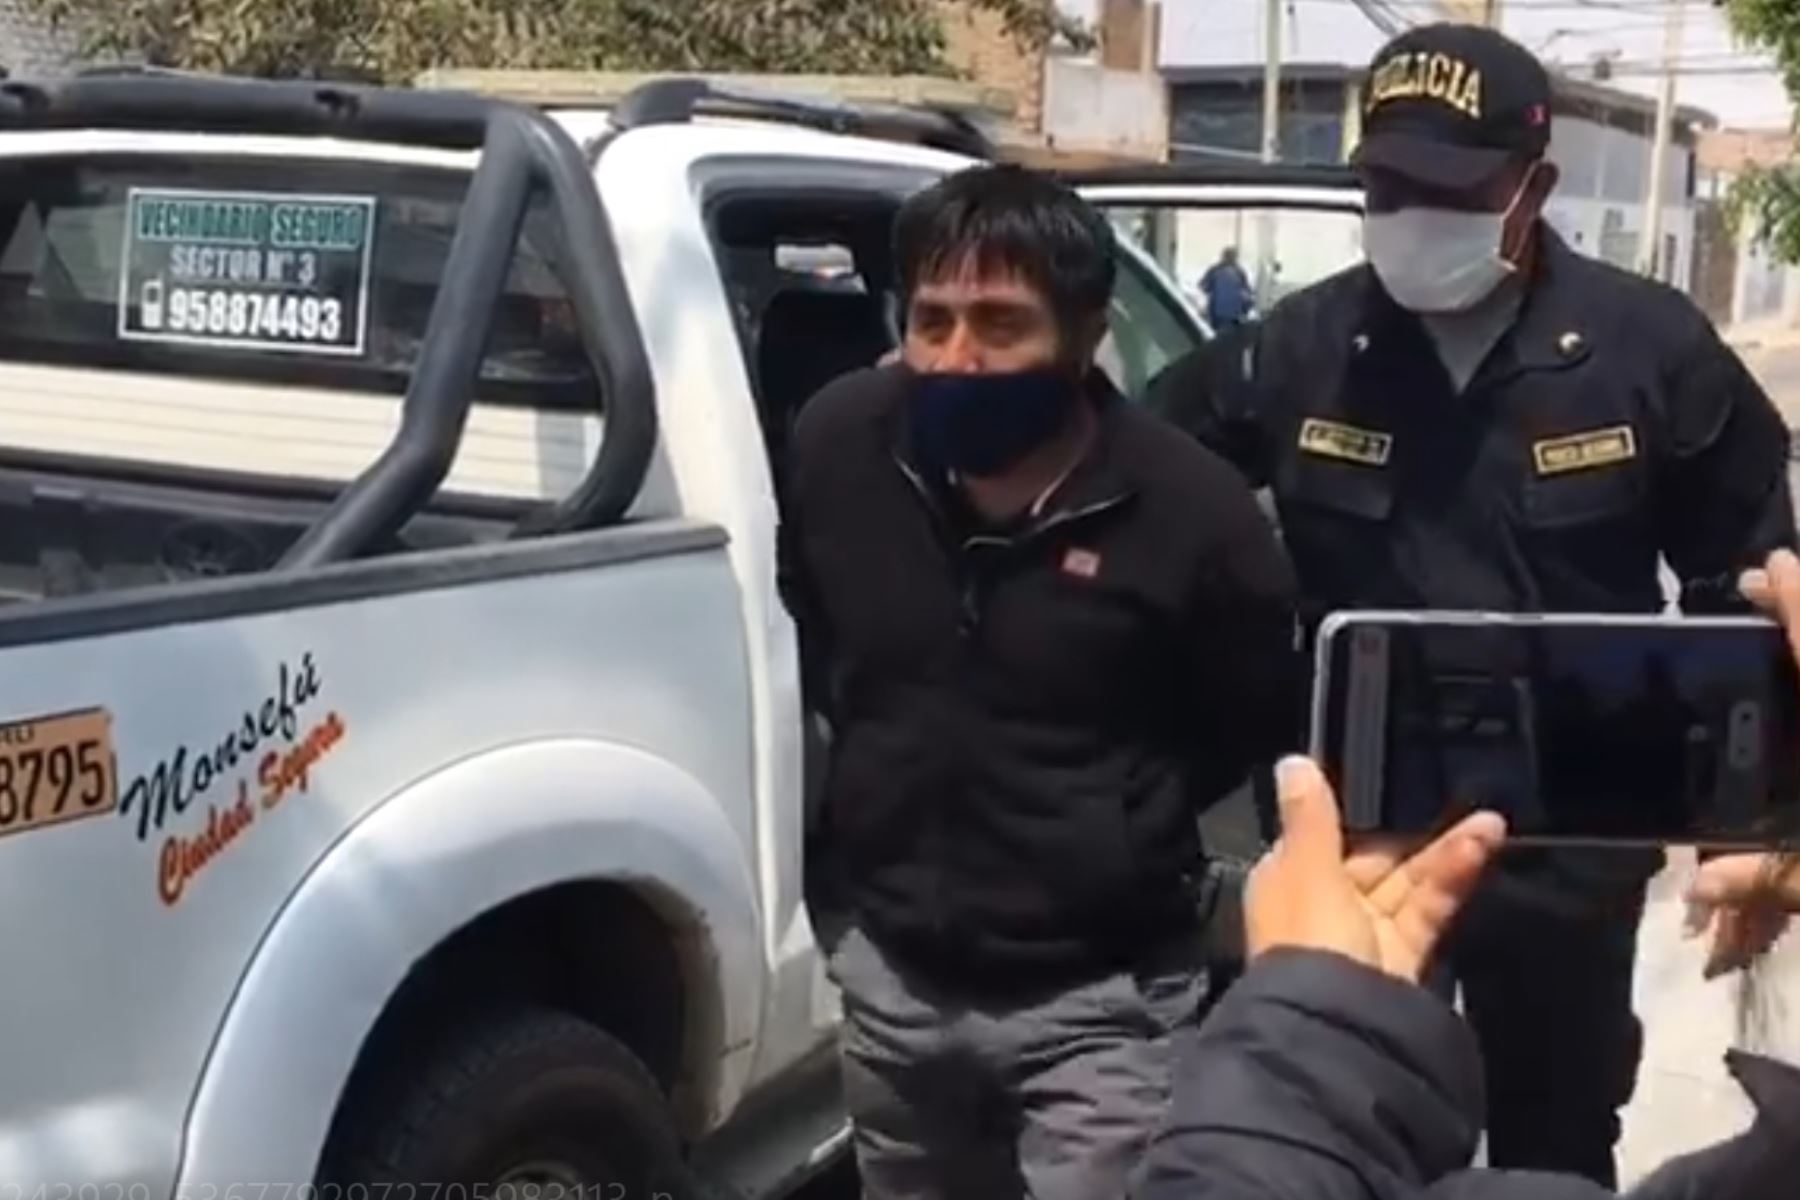 El alcalde de Monsefú, Manuel Pisfil Míñope, fue detenido tras una persecución por parte de los efectivos policiales. Foto: Captura TV